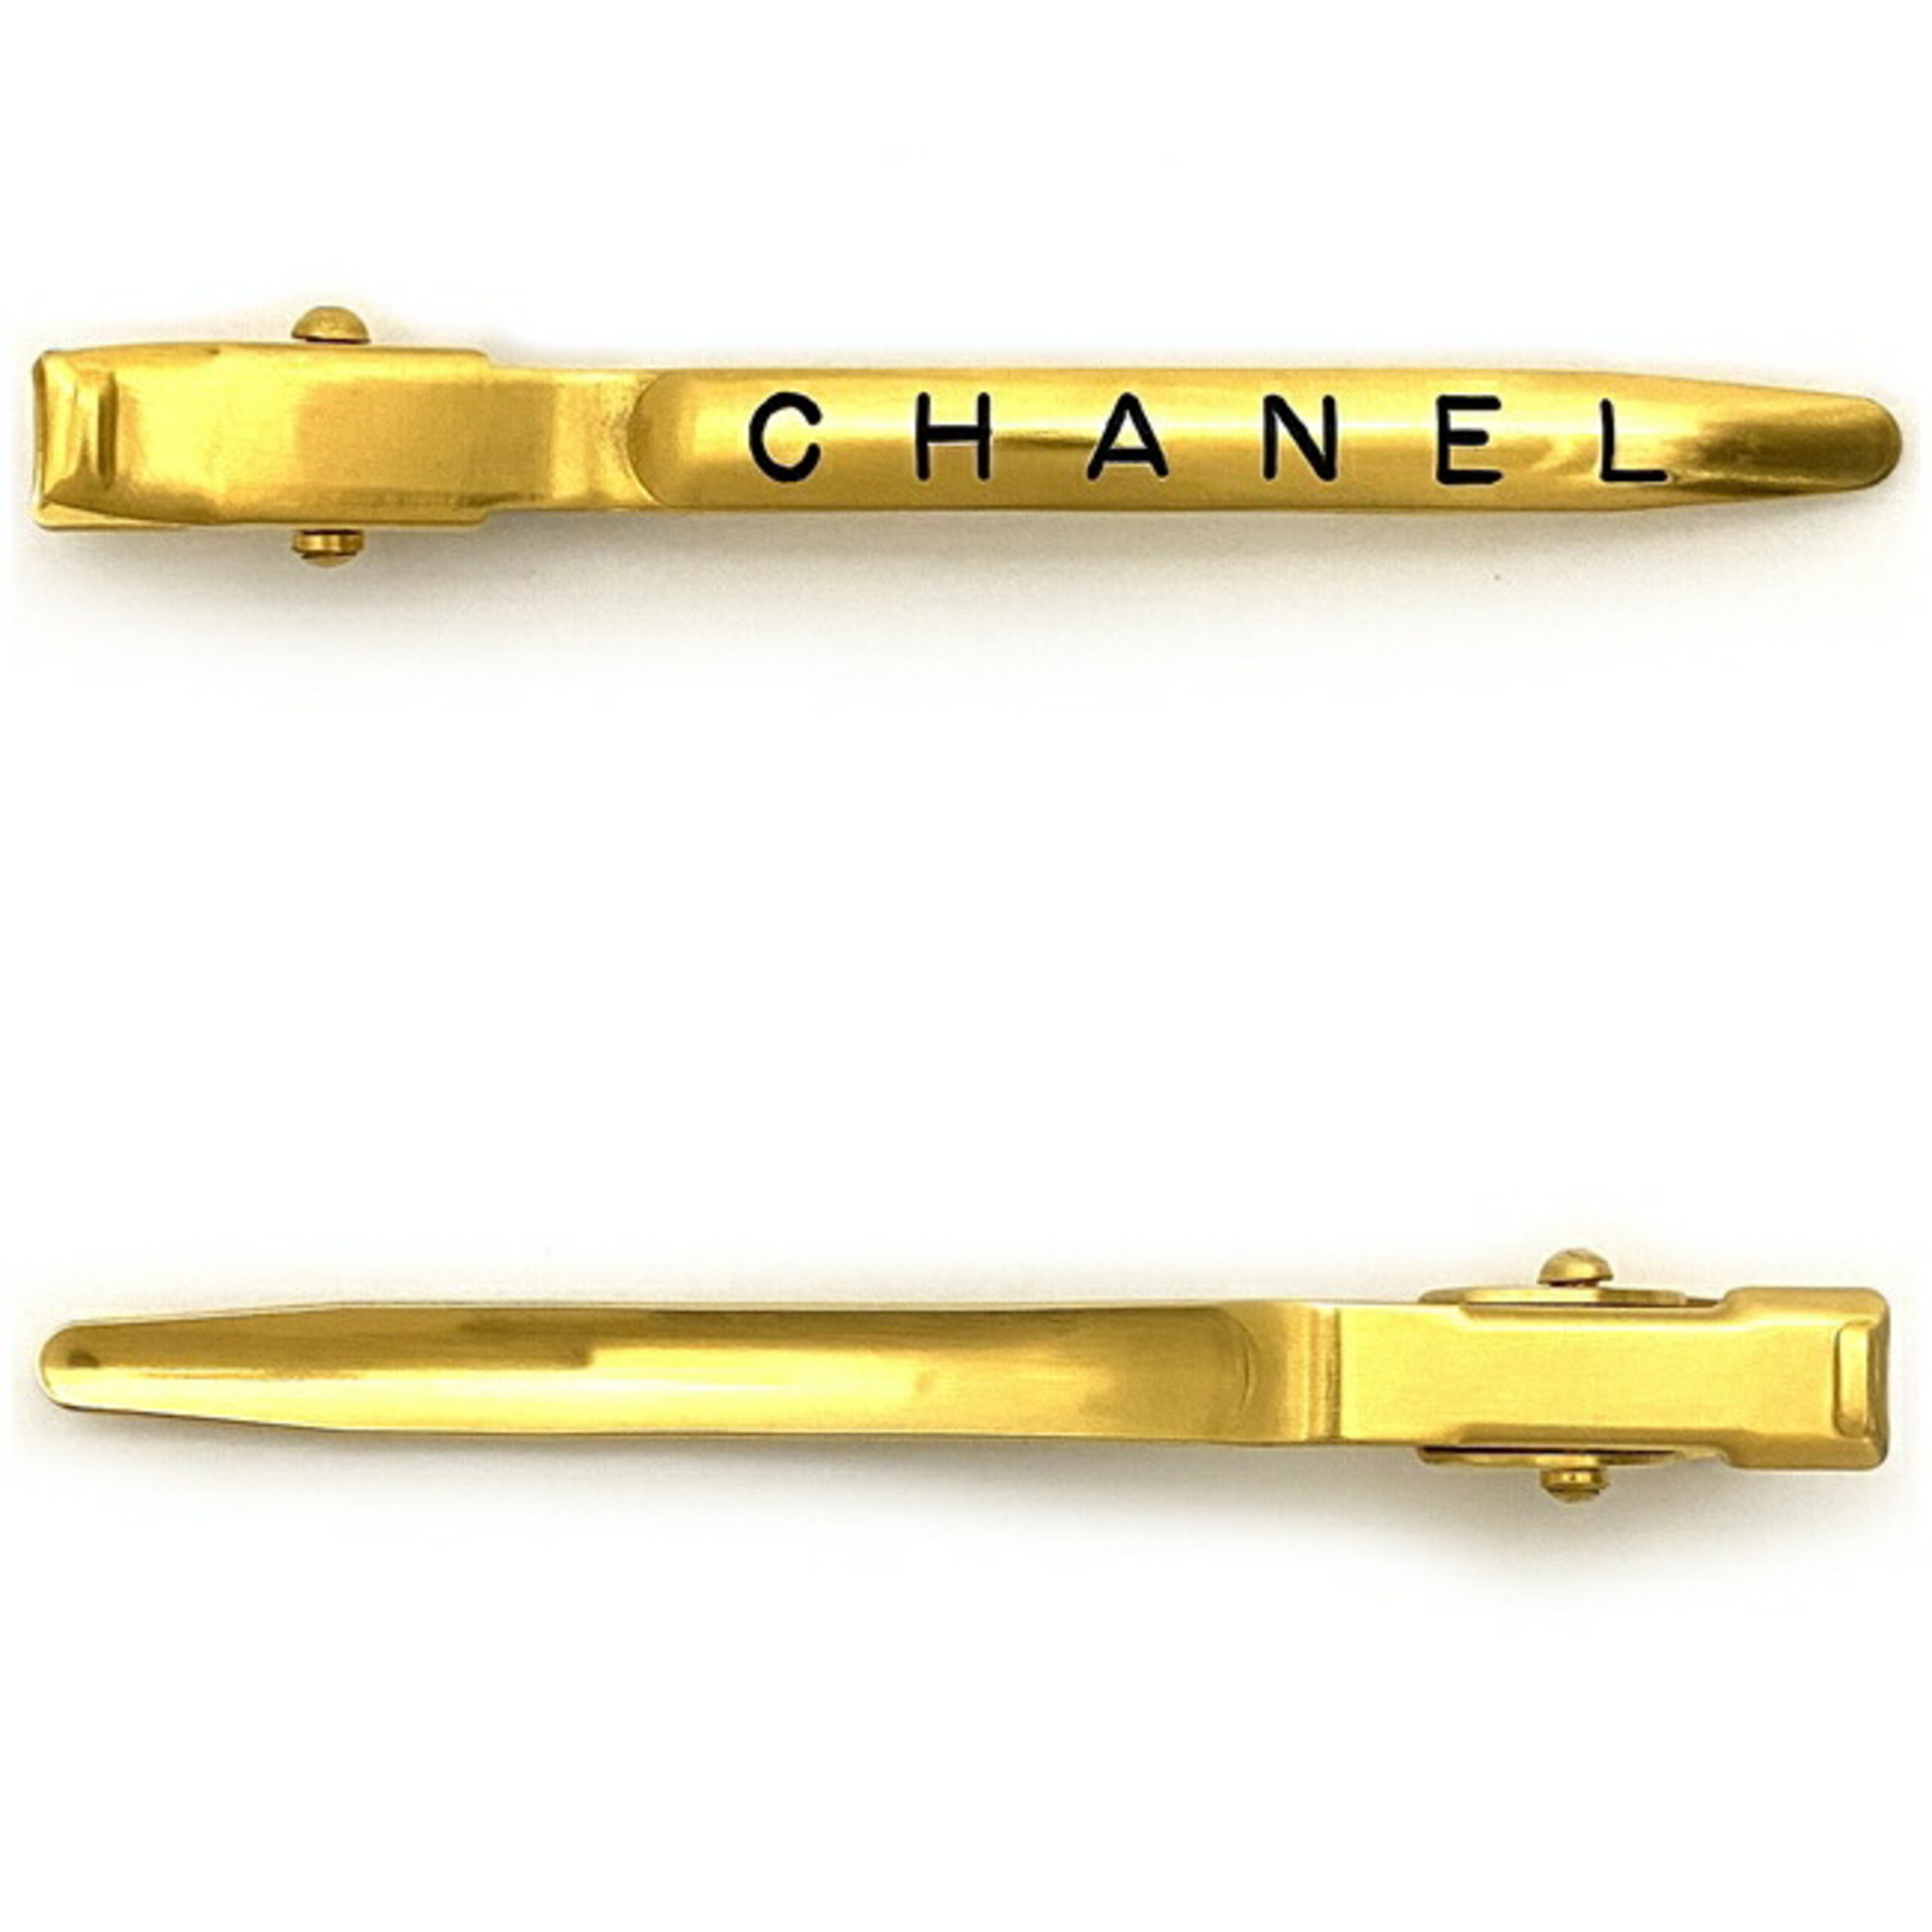 Chanel hair clip gold GP 97 P CHANEL ladies mini barrette